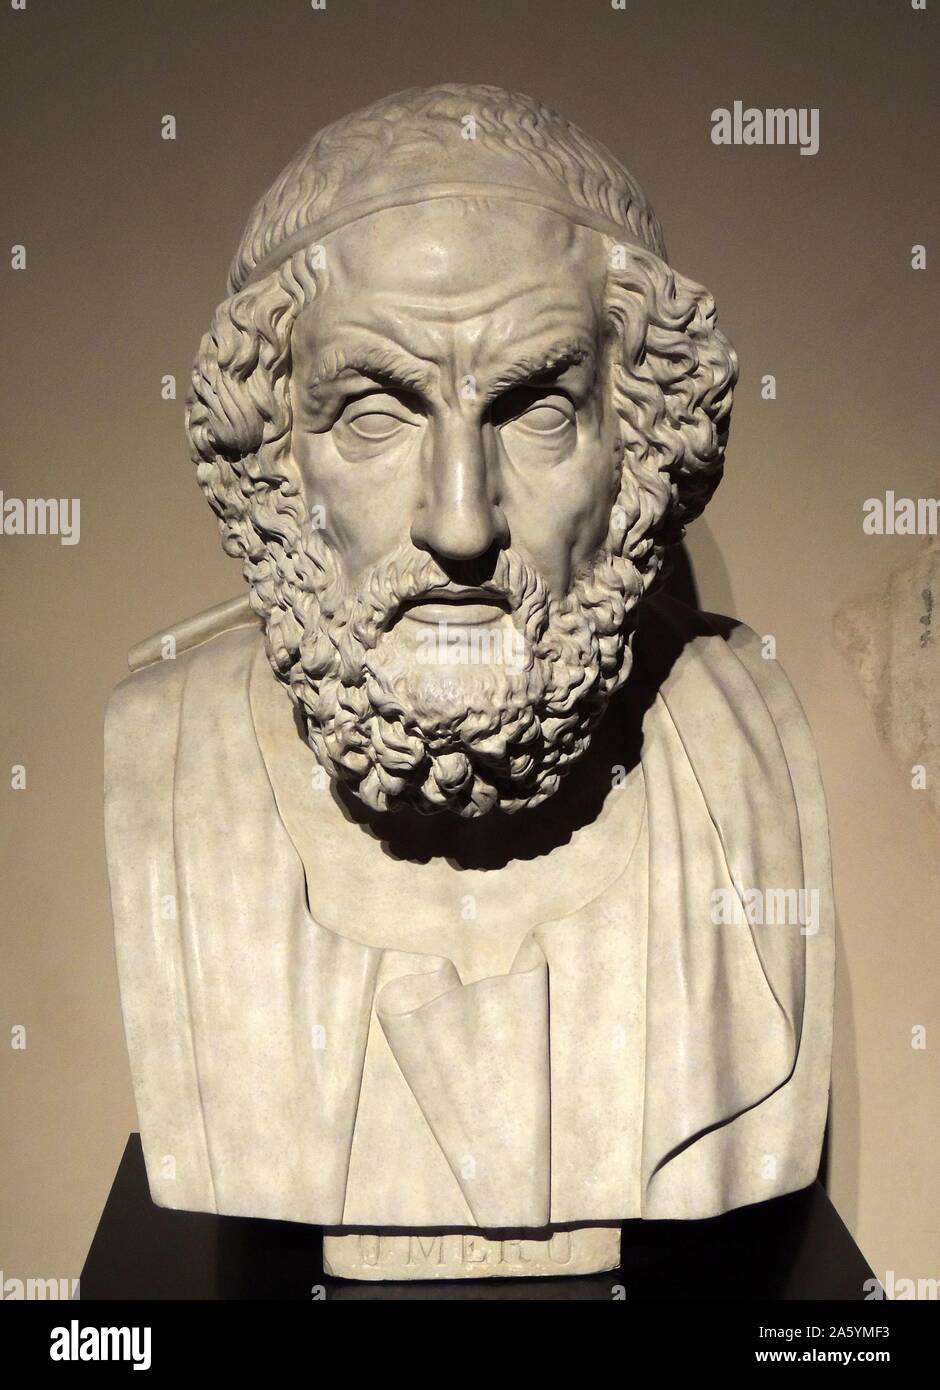 Buste du poète aveugle Homère dans l'ouest de tradition classique, Homer est l'auteur de l'Iliade et l'Odyssée et est vénéré comme le plus grand poète épique grec ancien. Lorsqu'il a vécu est inconnue mais Hérodote estime qu'il est autour de 850 avant JC. Banque D'Images